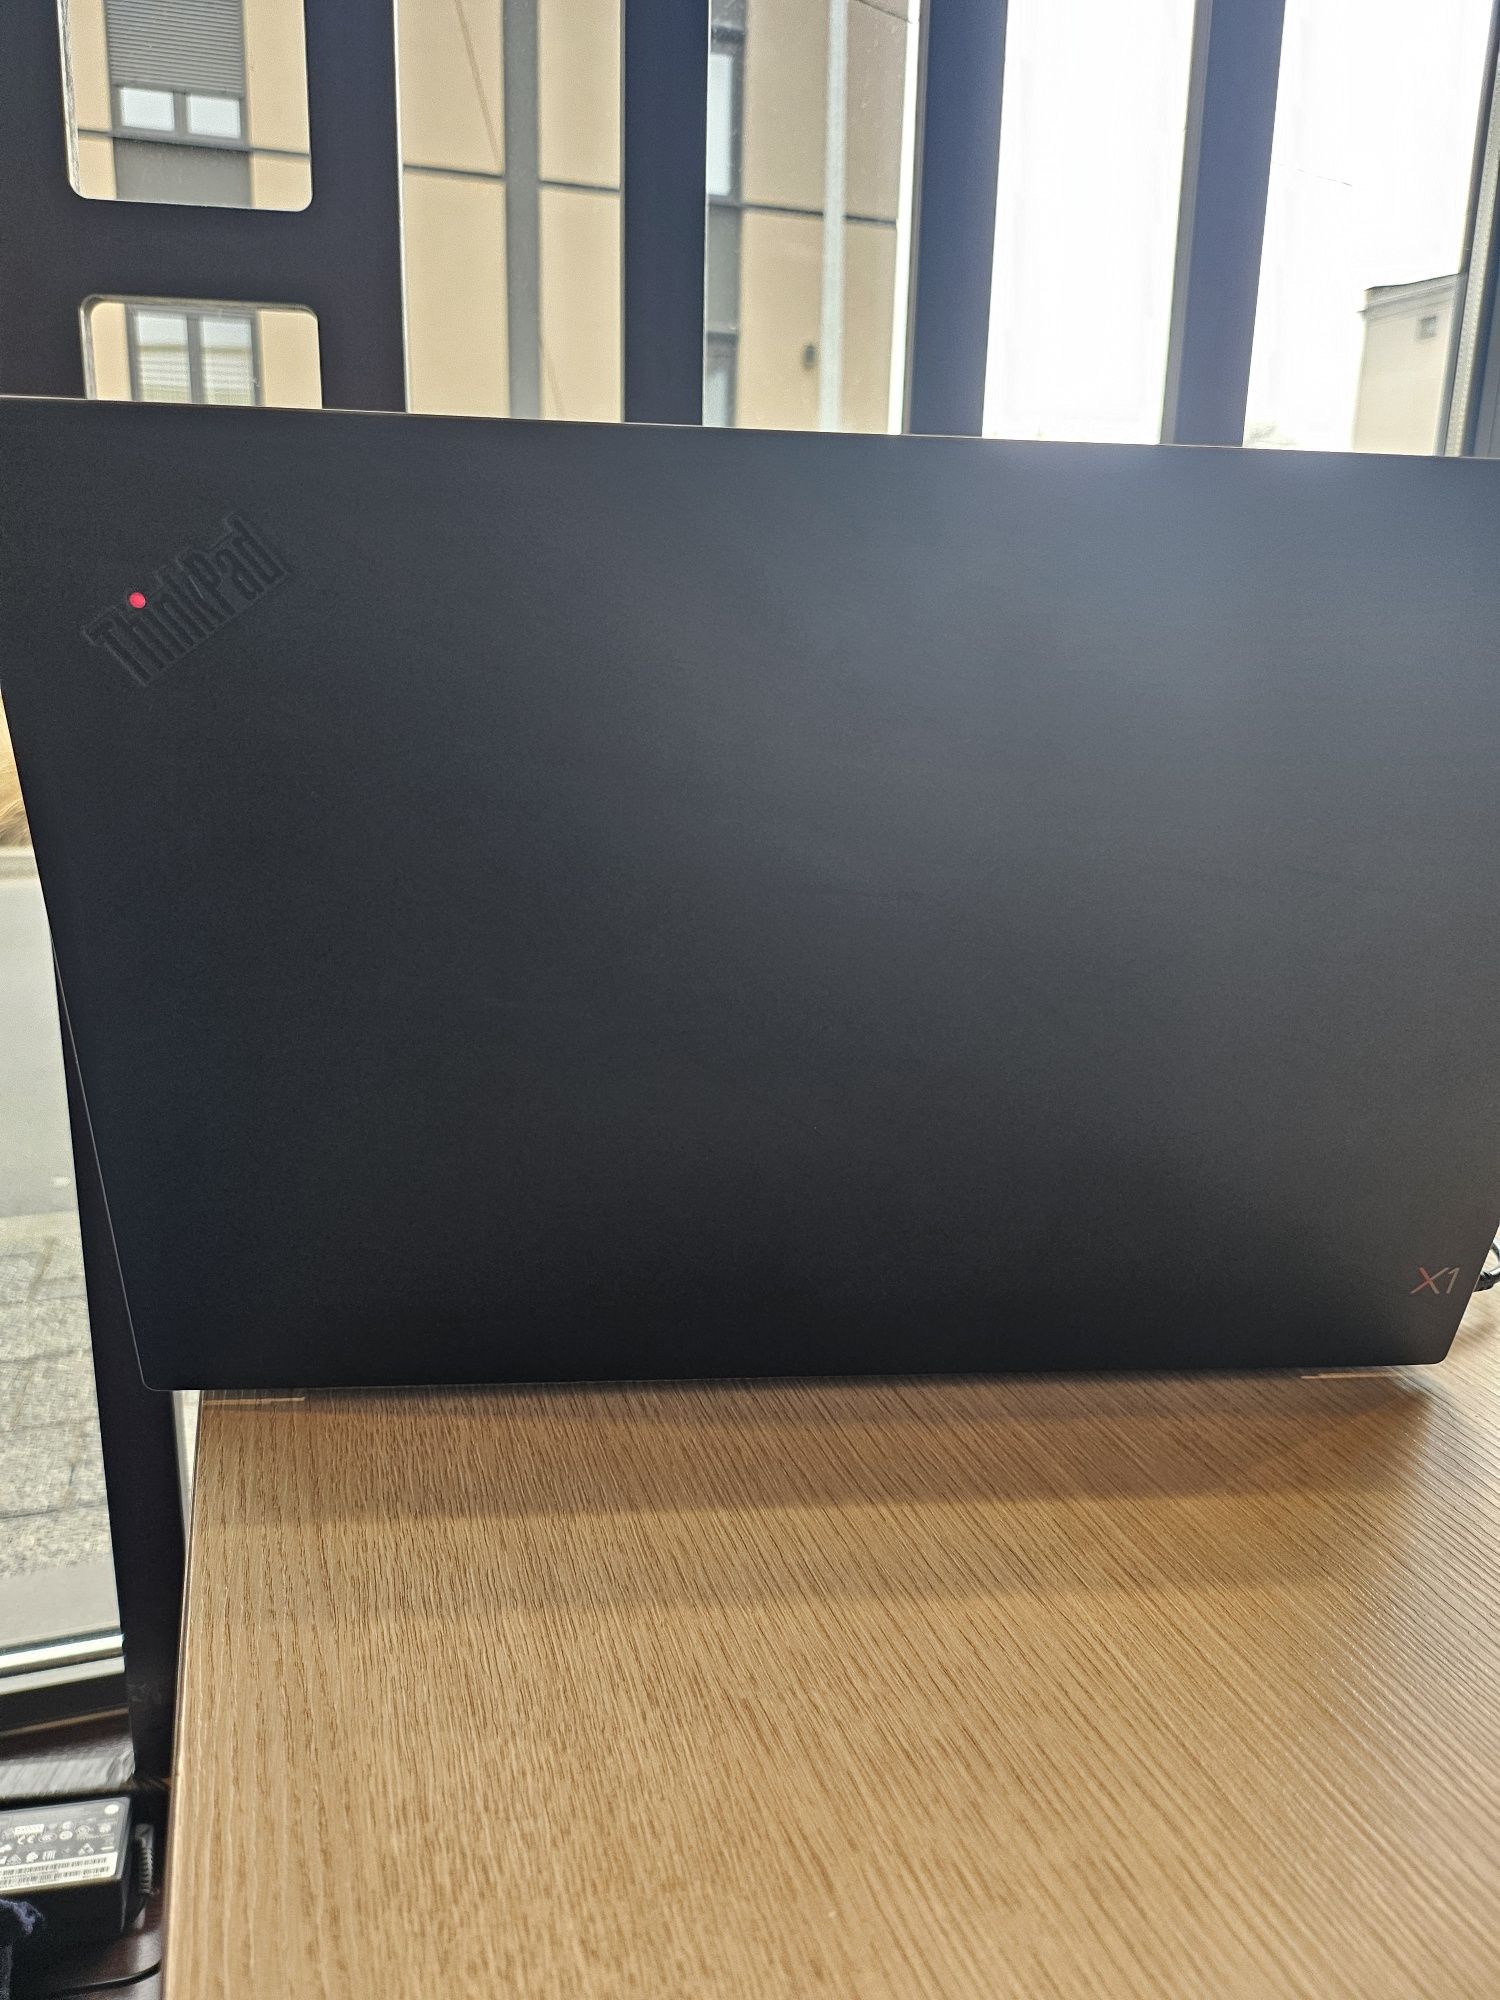 Lenovo ThinkPad extreme x1 4K 32gb ram 512gb i7 dotykowy ekran